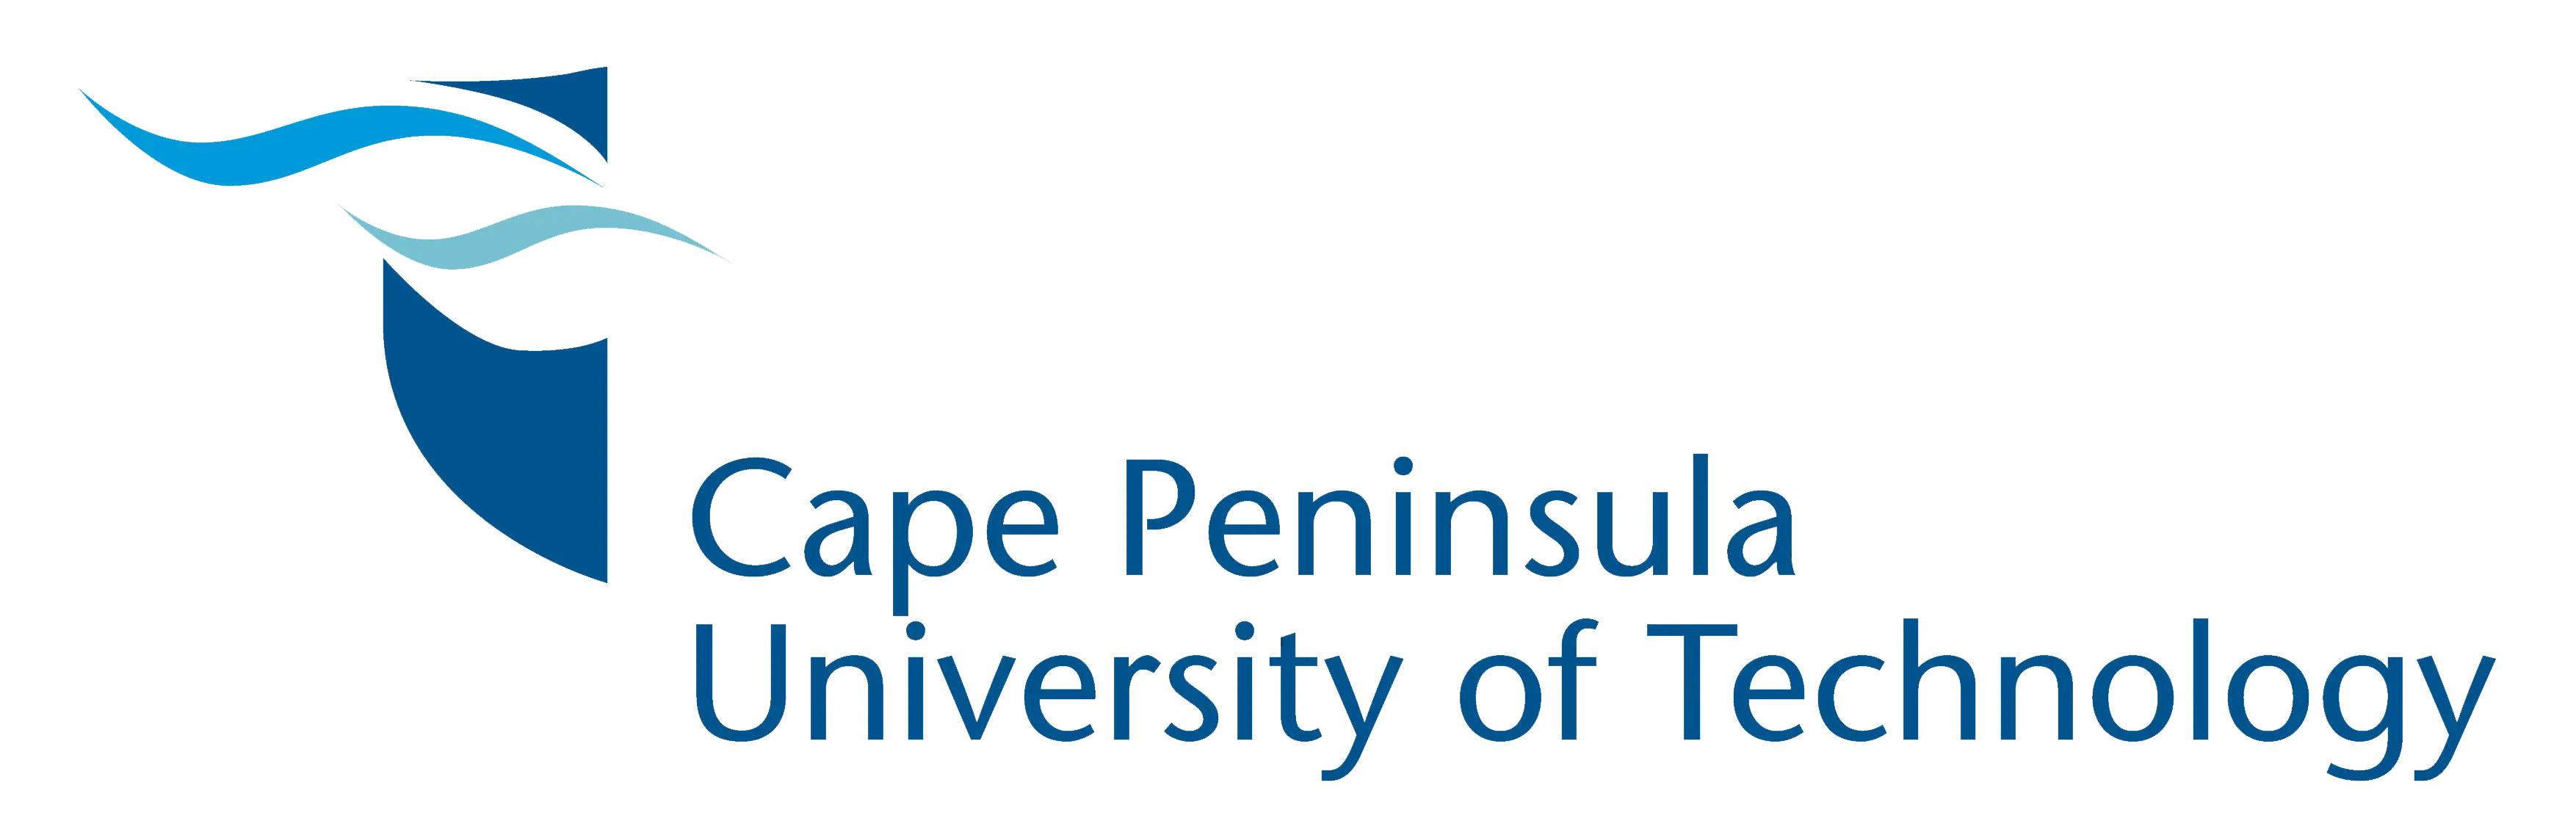 Cape Peninsula University of Technologylogo